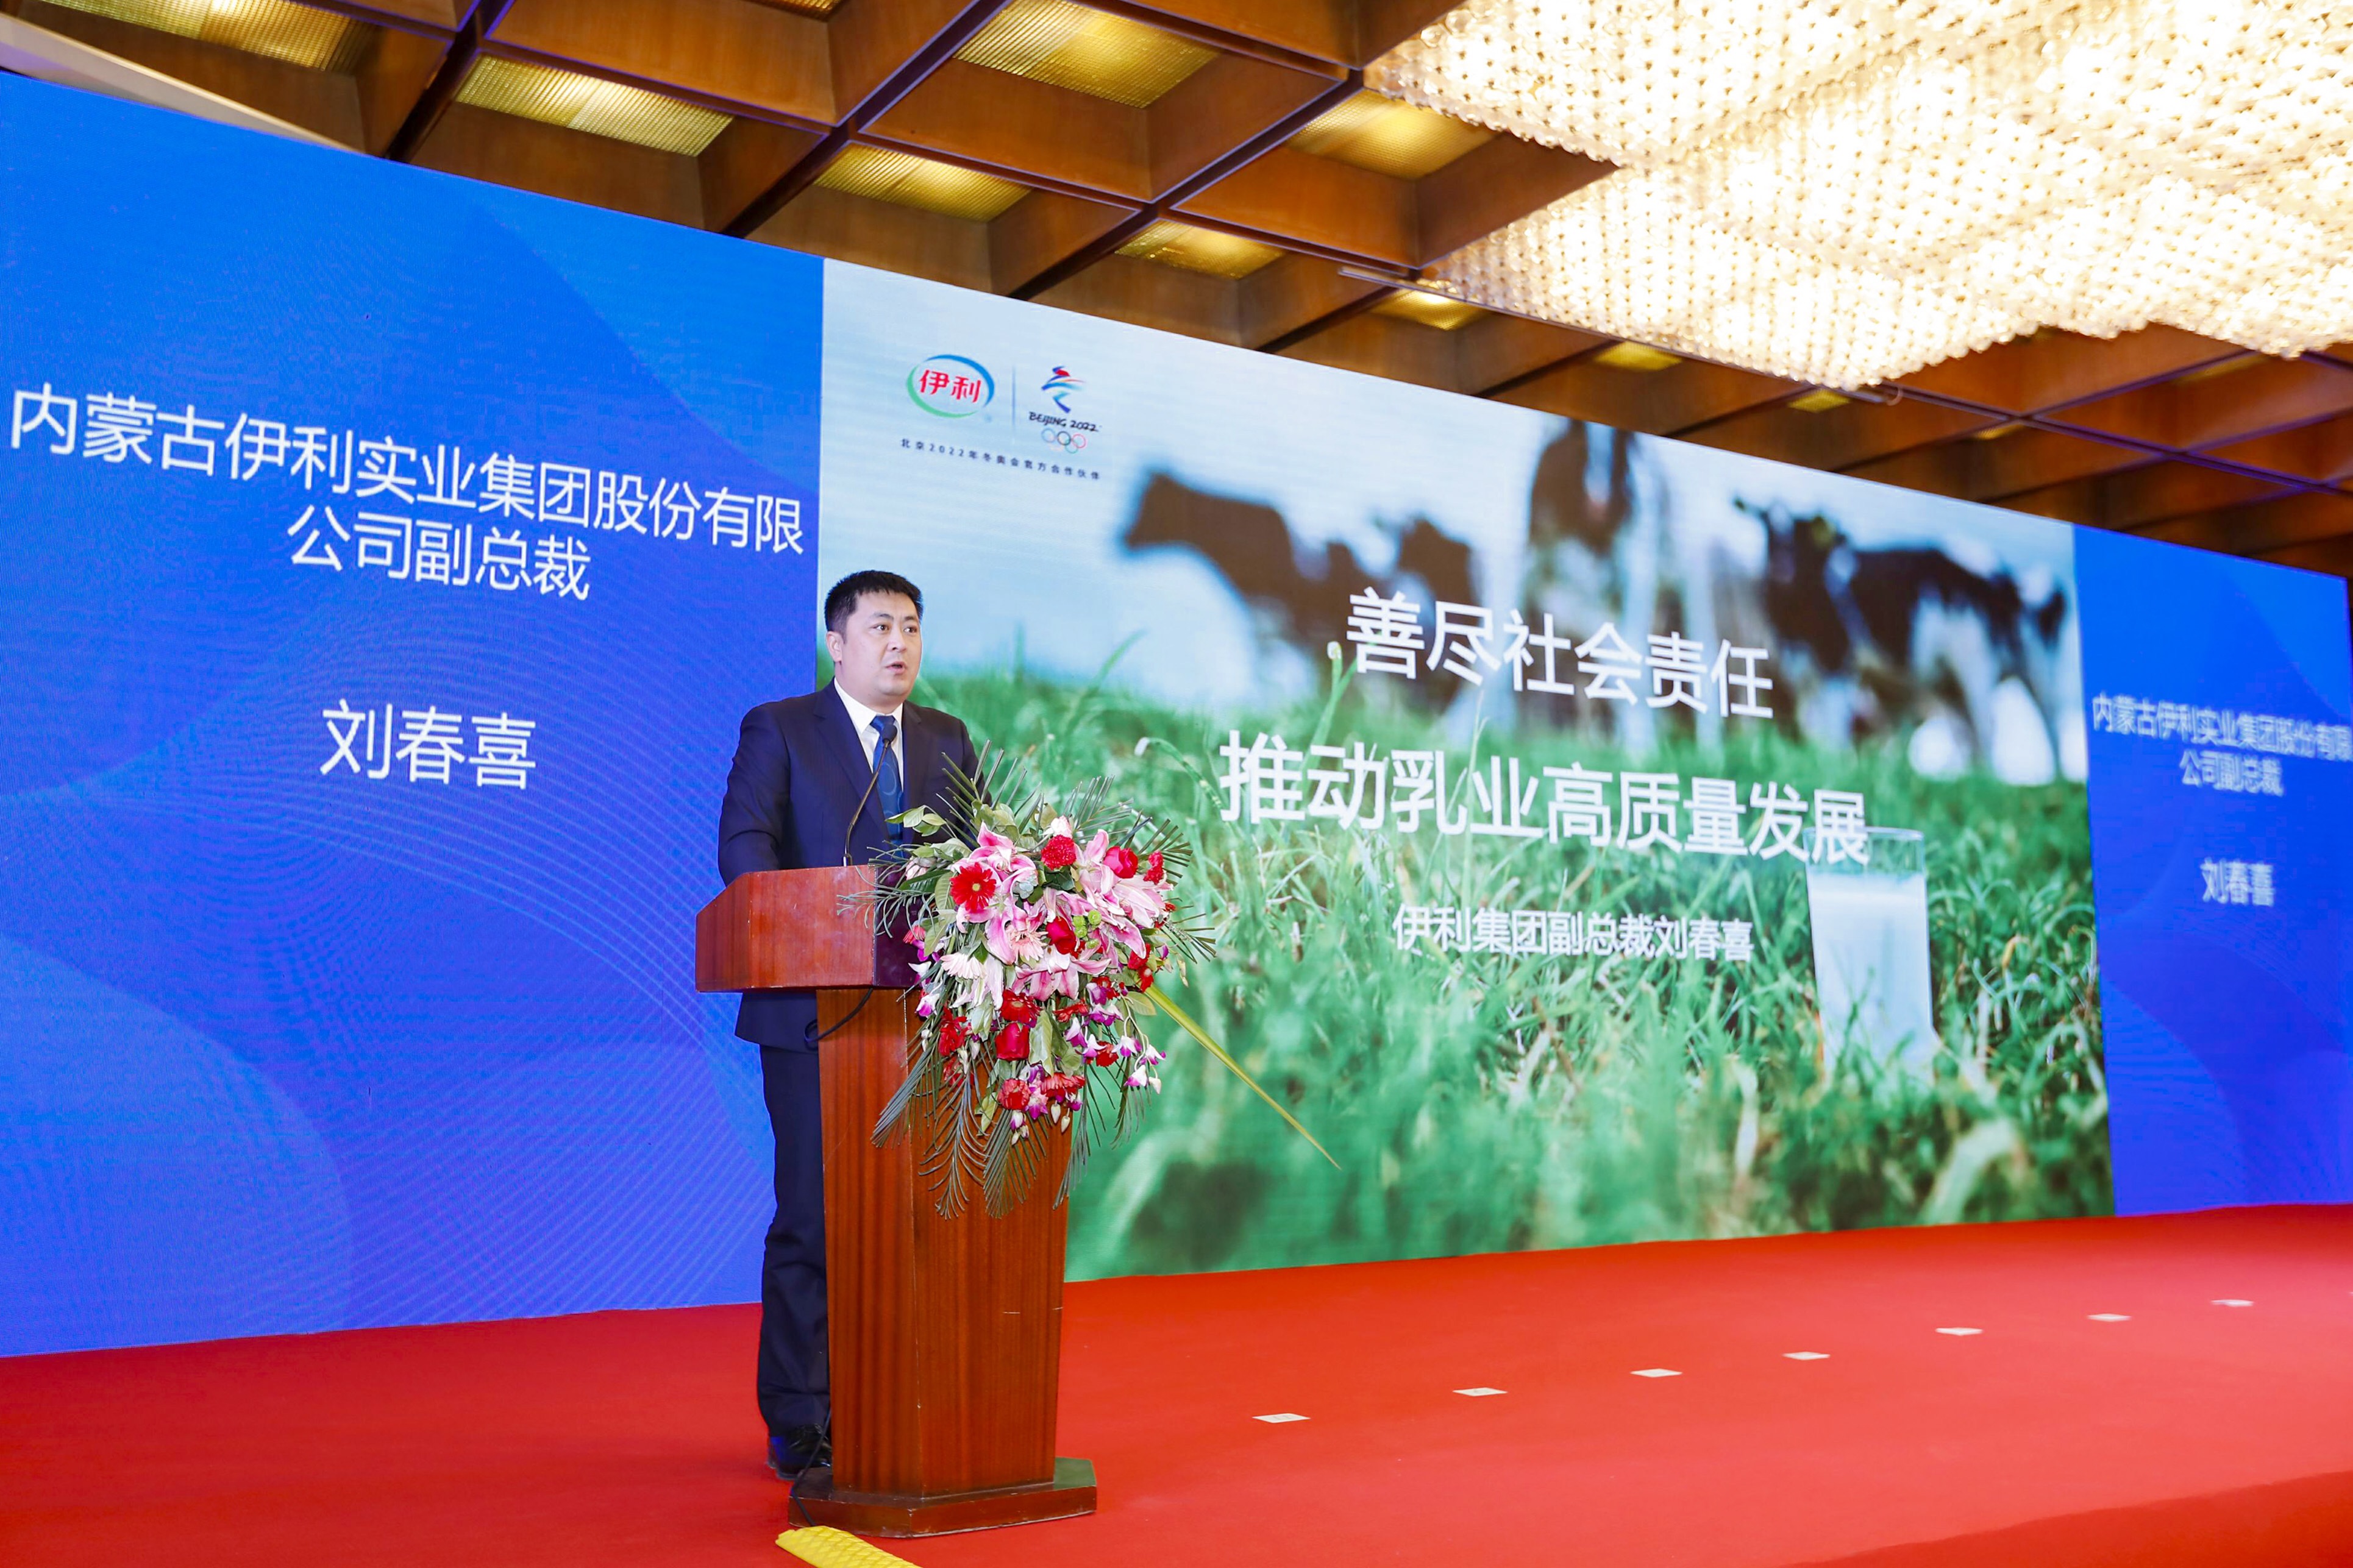 伊利集团副总裁刘春喜在第三届中国乳业质量年会上发言